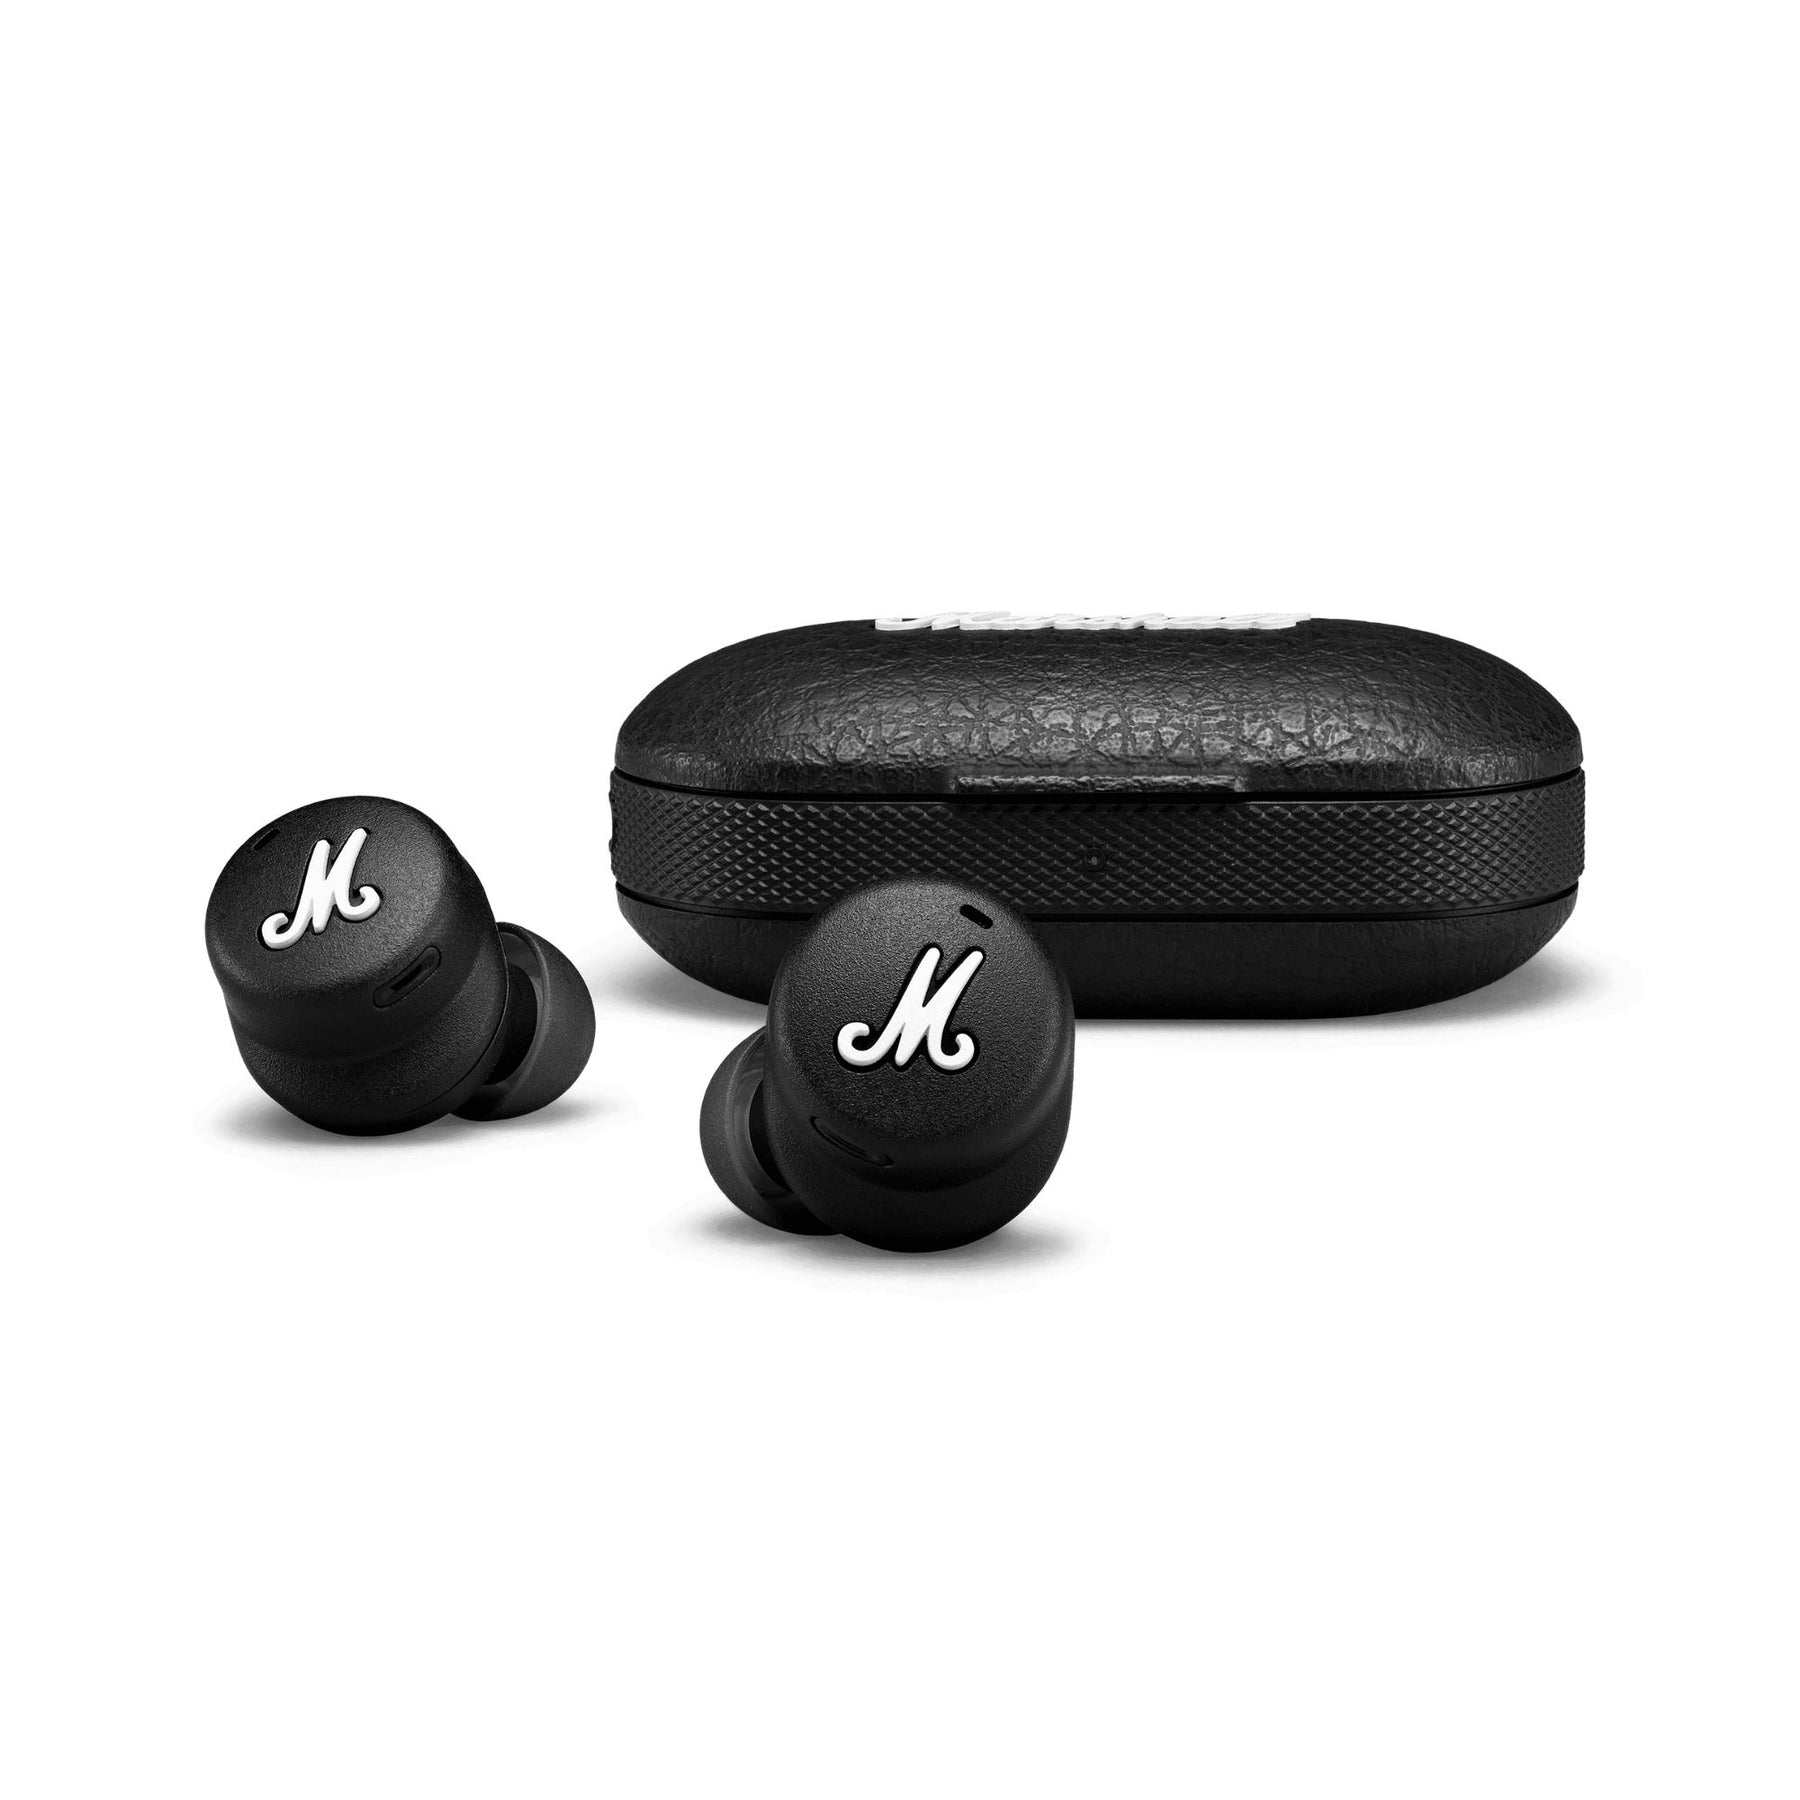 II - AVStore Wireless | Marshall in-ear headphone Mode True